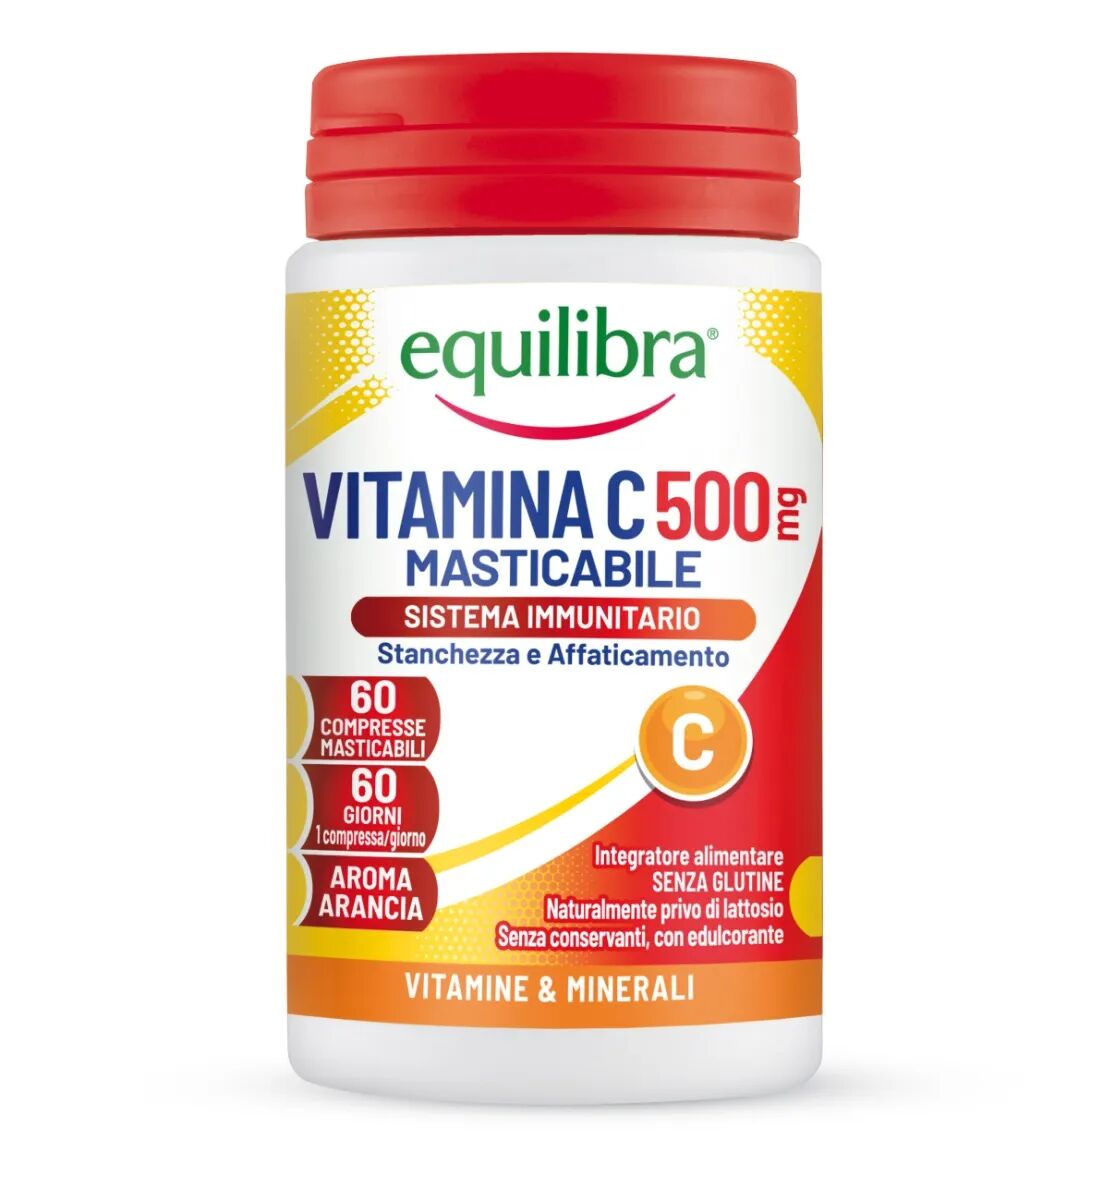 Equilibra Vitamina C 500 Integratore Sistema Immunitario 60 Compresse Masticabili